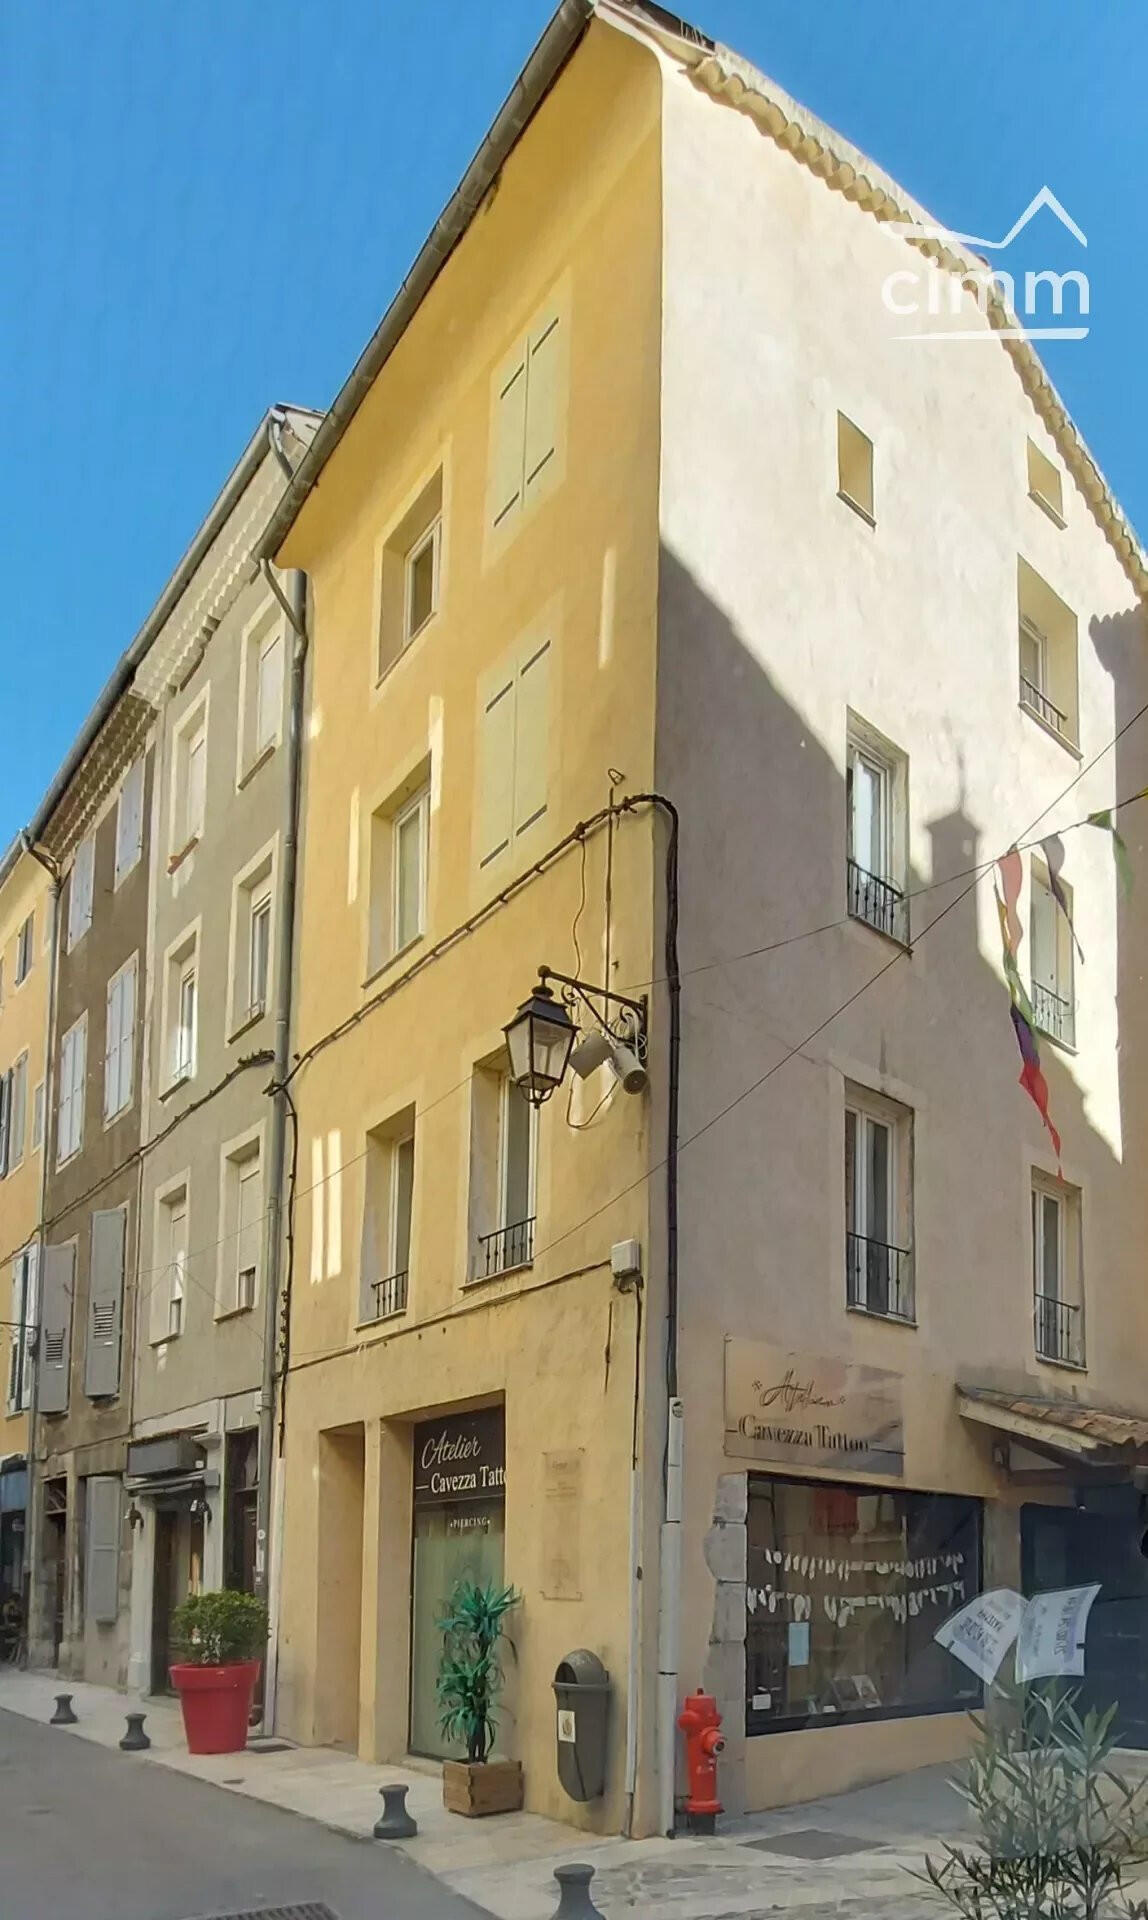 Vente immeuble avec cave à Sisteron 